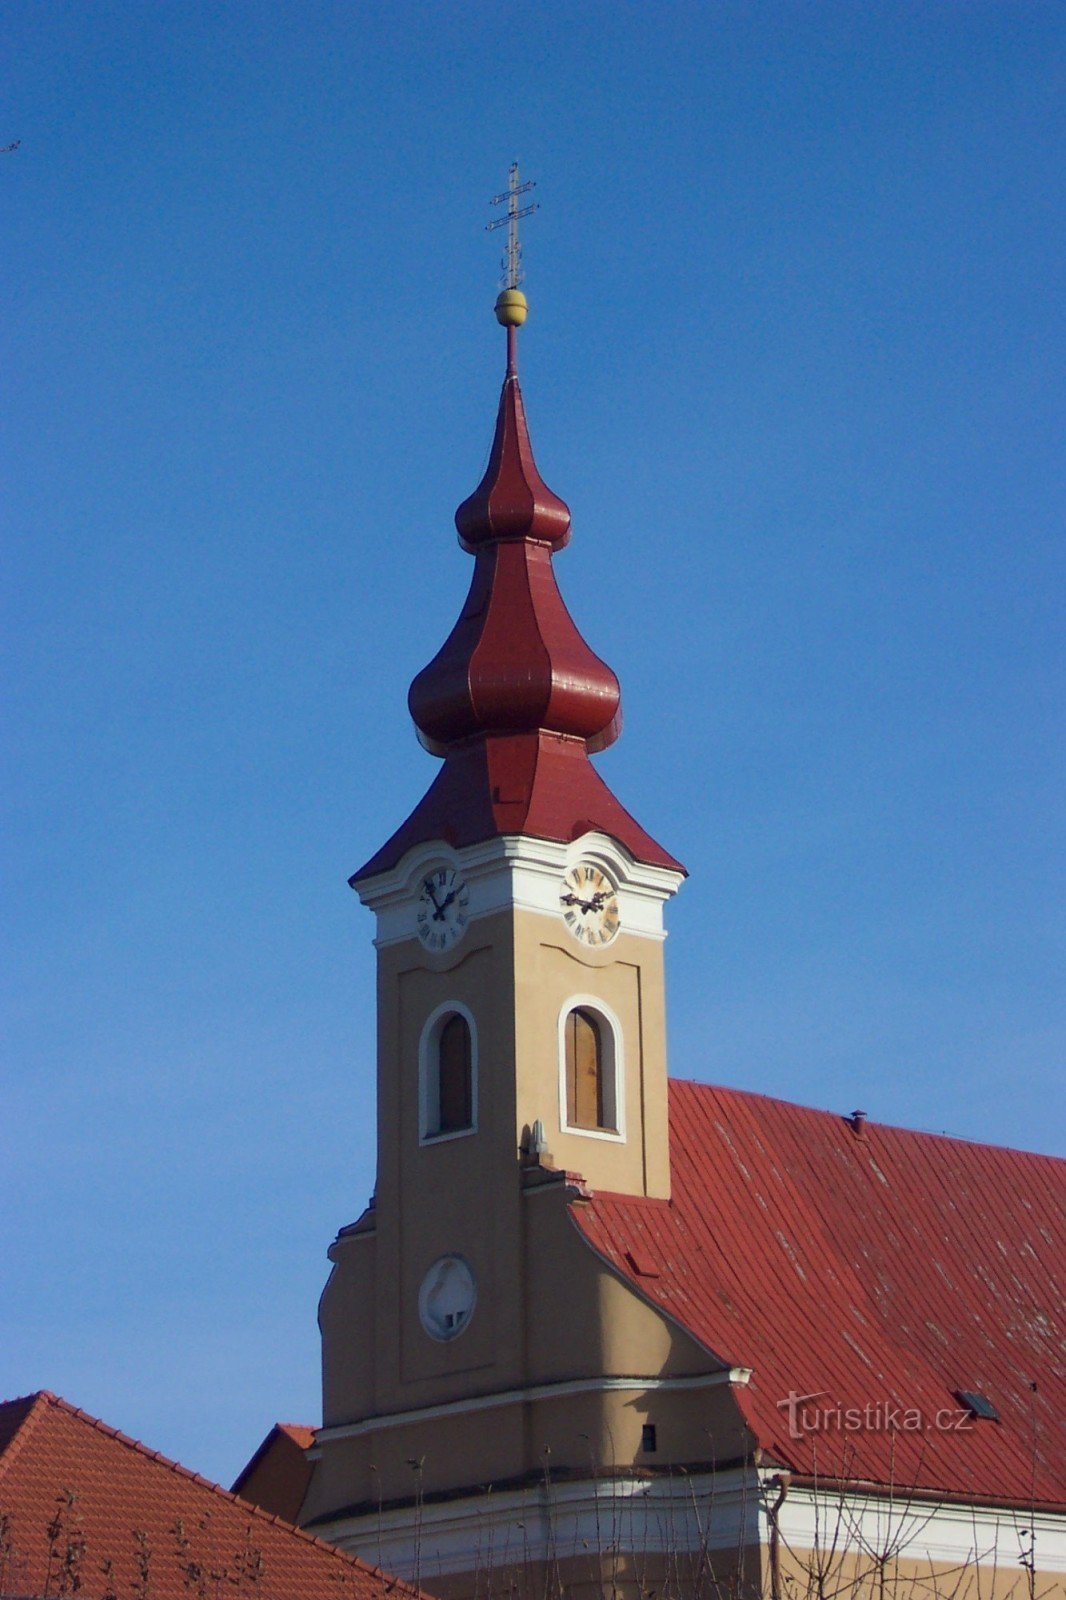 Церковь св. Хавела Древогостице